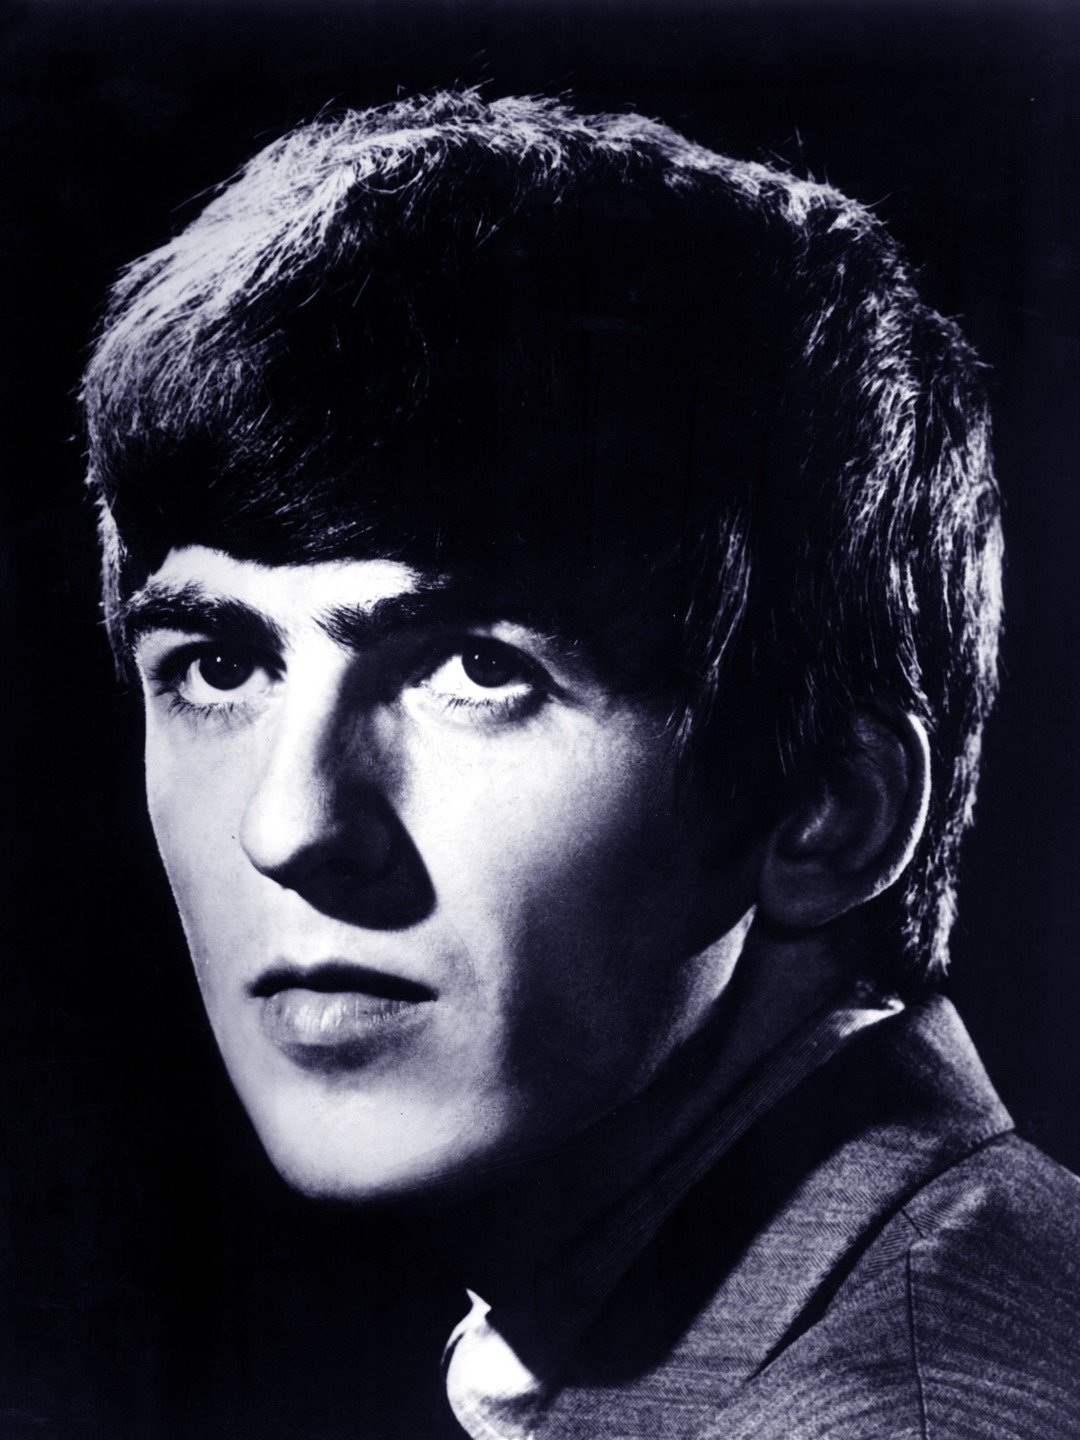 George Harrison - Musician, Songwriter, Singer, Activist